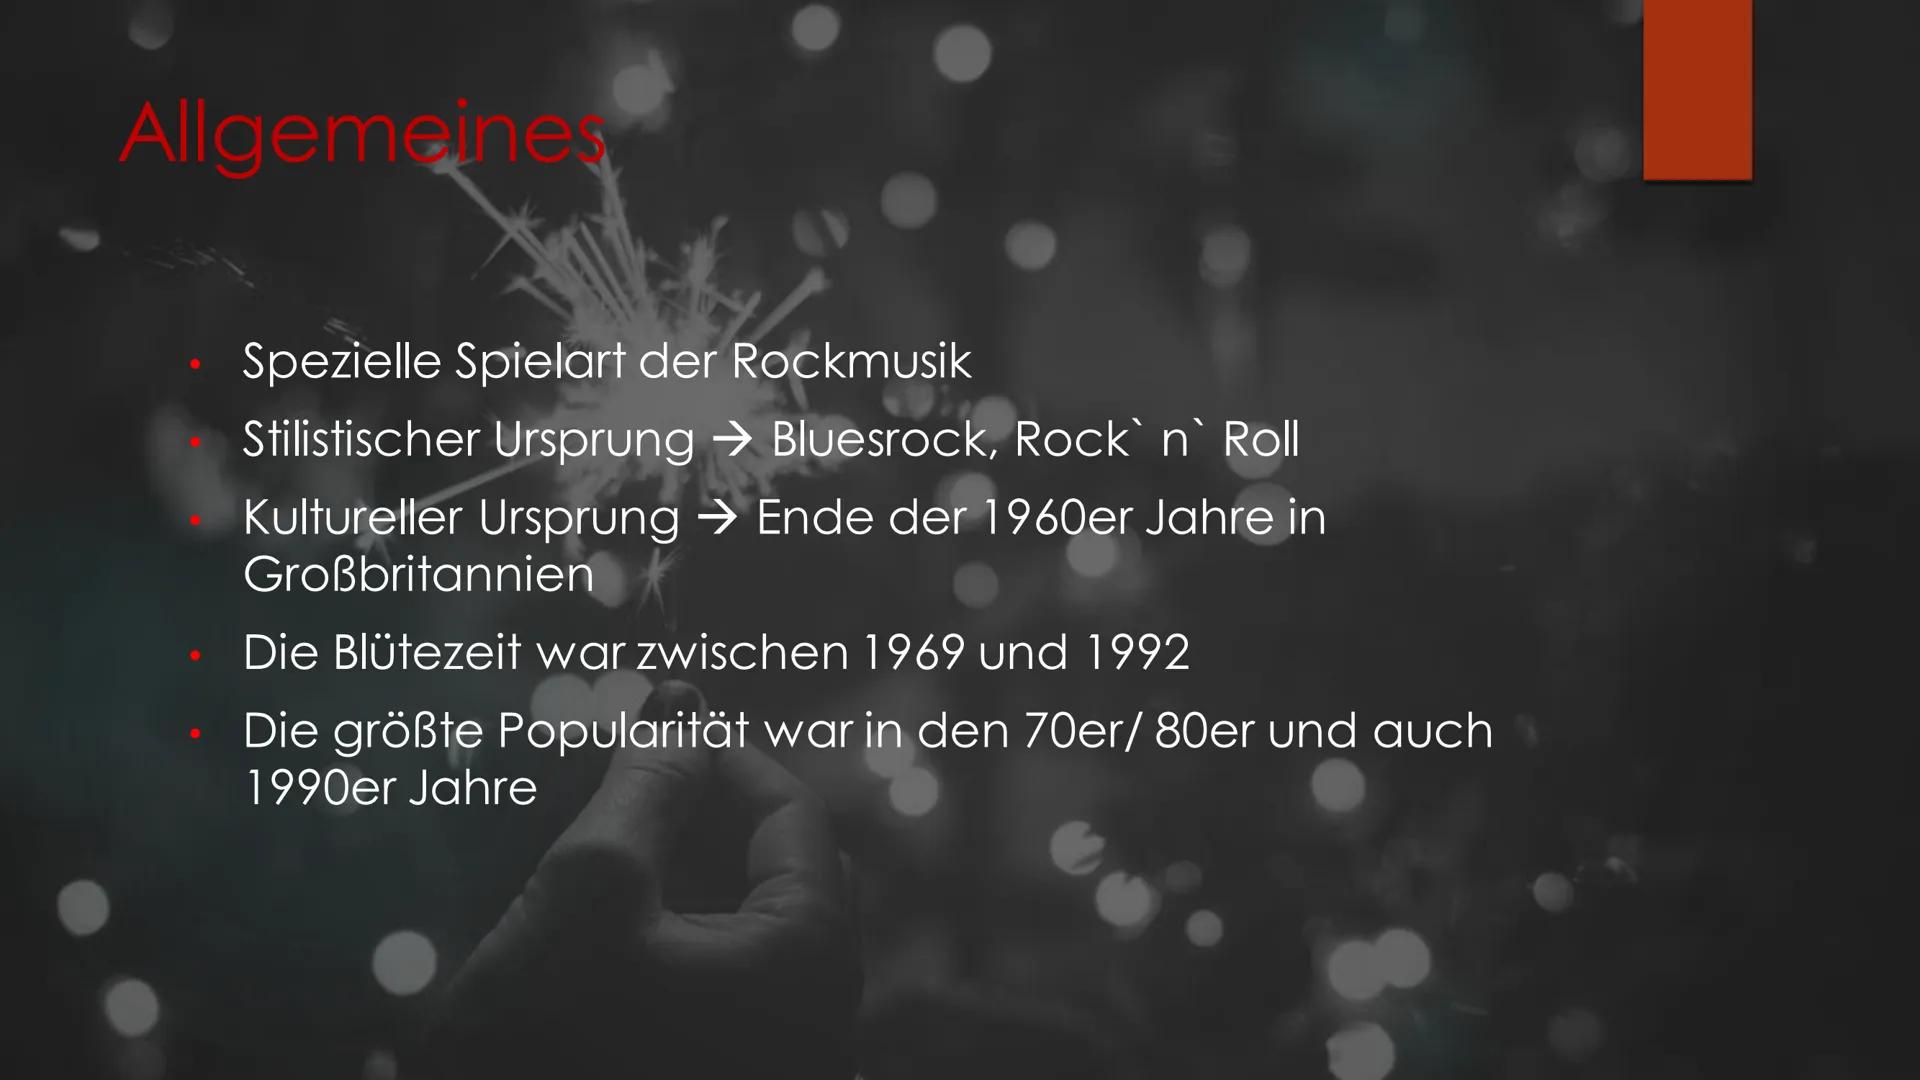 &
Hard Rock
MUSIKUNTERRICHT
IM NOVEMBER 2020 Inhaltvereichnis
Allgemeines
Was ist Hard Rock?
Entstehung
Musikalische Stilmittel
Vertreter
Kl